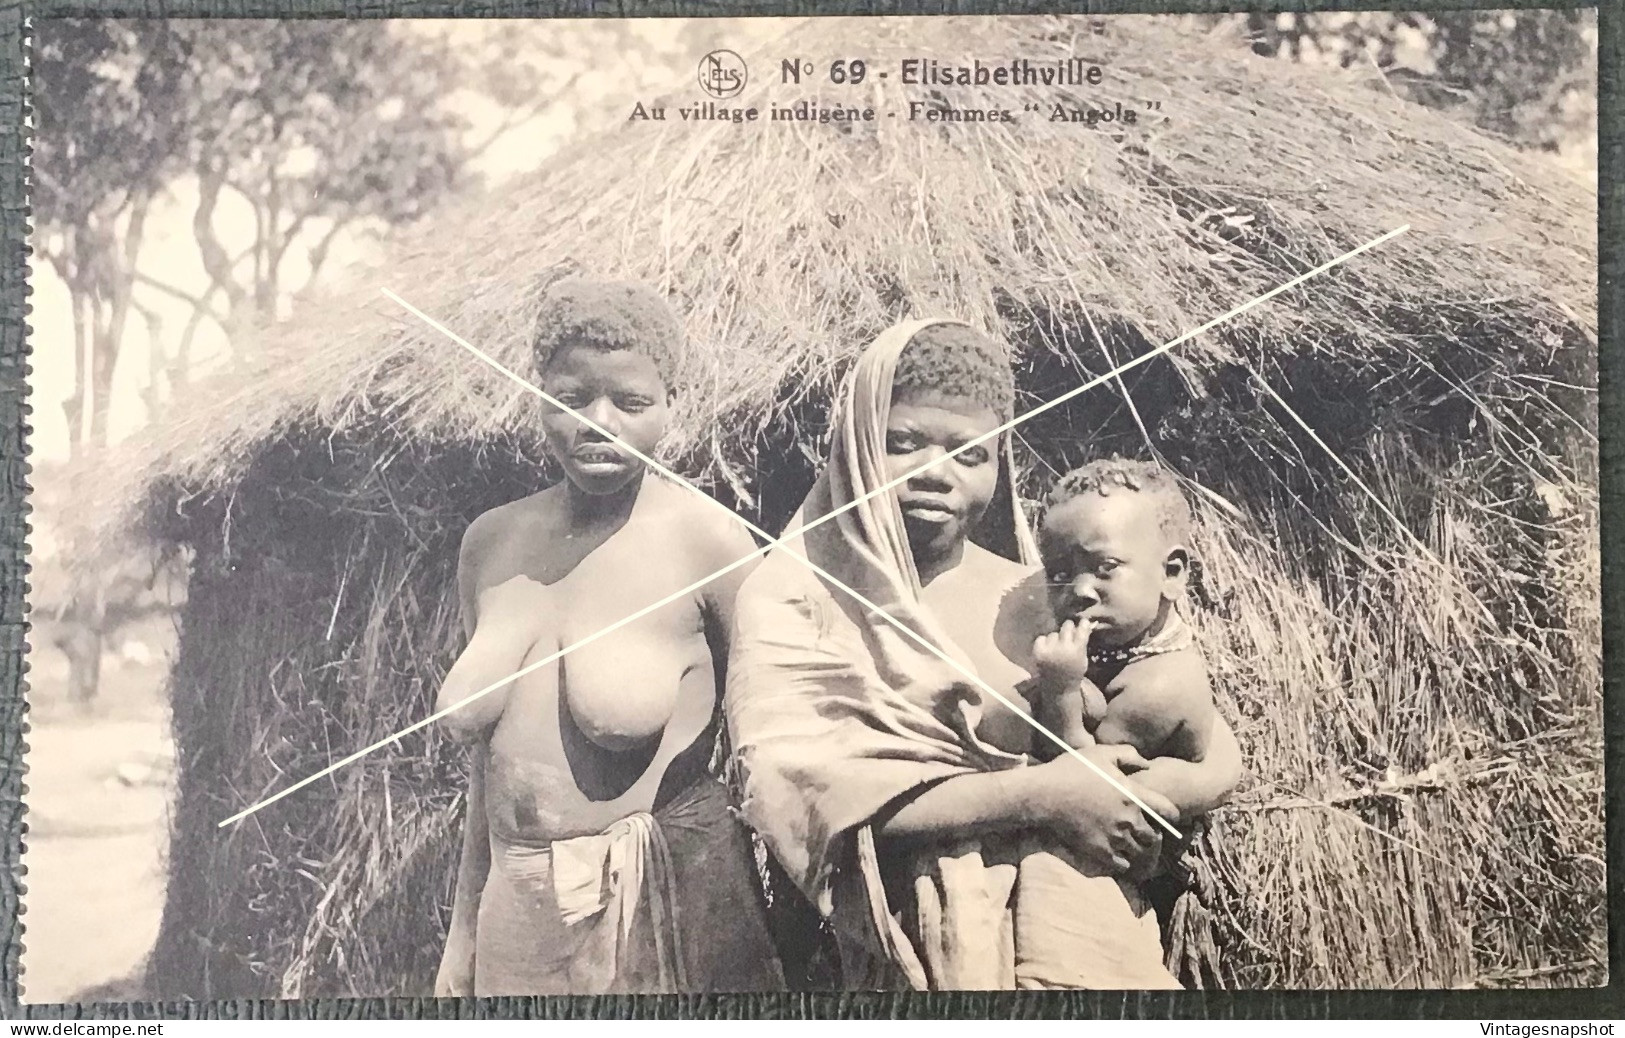 ELISABETHVILLE CONGO BELGE BELGISCH KONGO Au Village Indigène Femmes « Angola » CP PK édit. Librairie Belge, R. Lcuis - Congo Belge